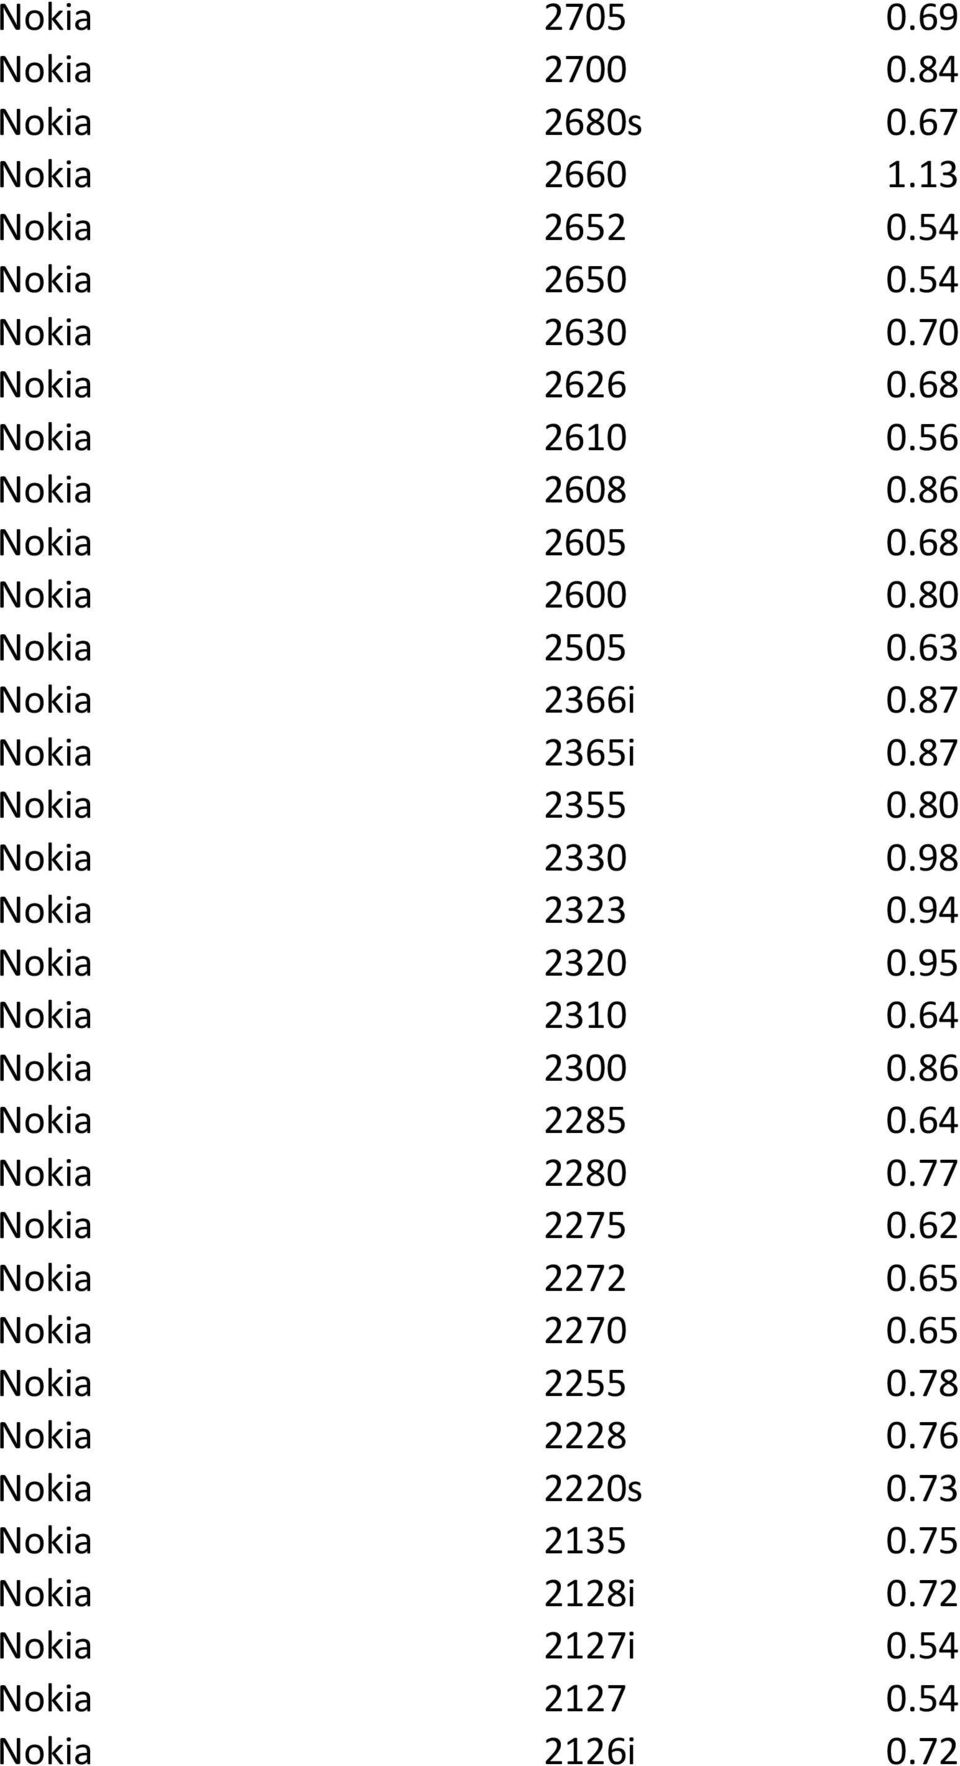 80 Nokia 2330 0.98 Nokia 2323 0.94 Nokia 2320 0.95 Nokia 2310 0.64 Nokia 2300 0.86 Nokia 2285 0.64 Nokia 2280 0.77 Nokia 2275 0.